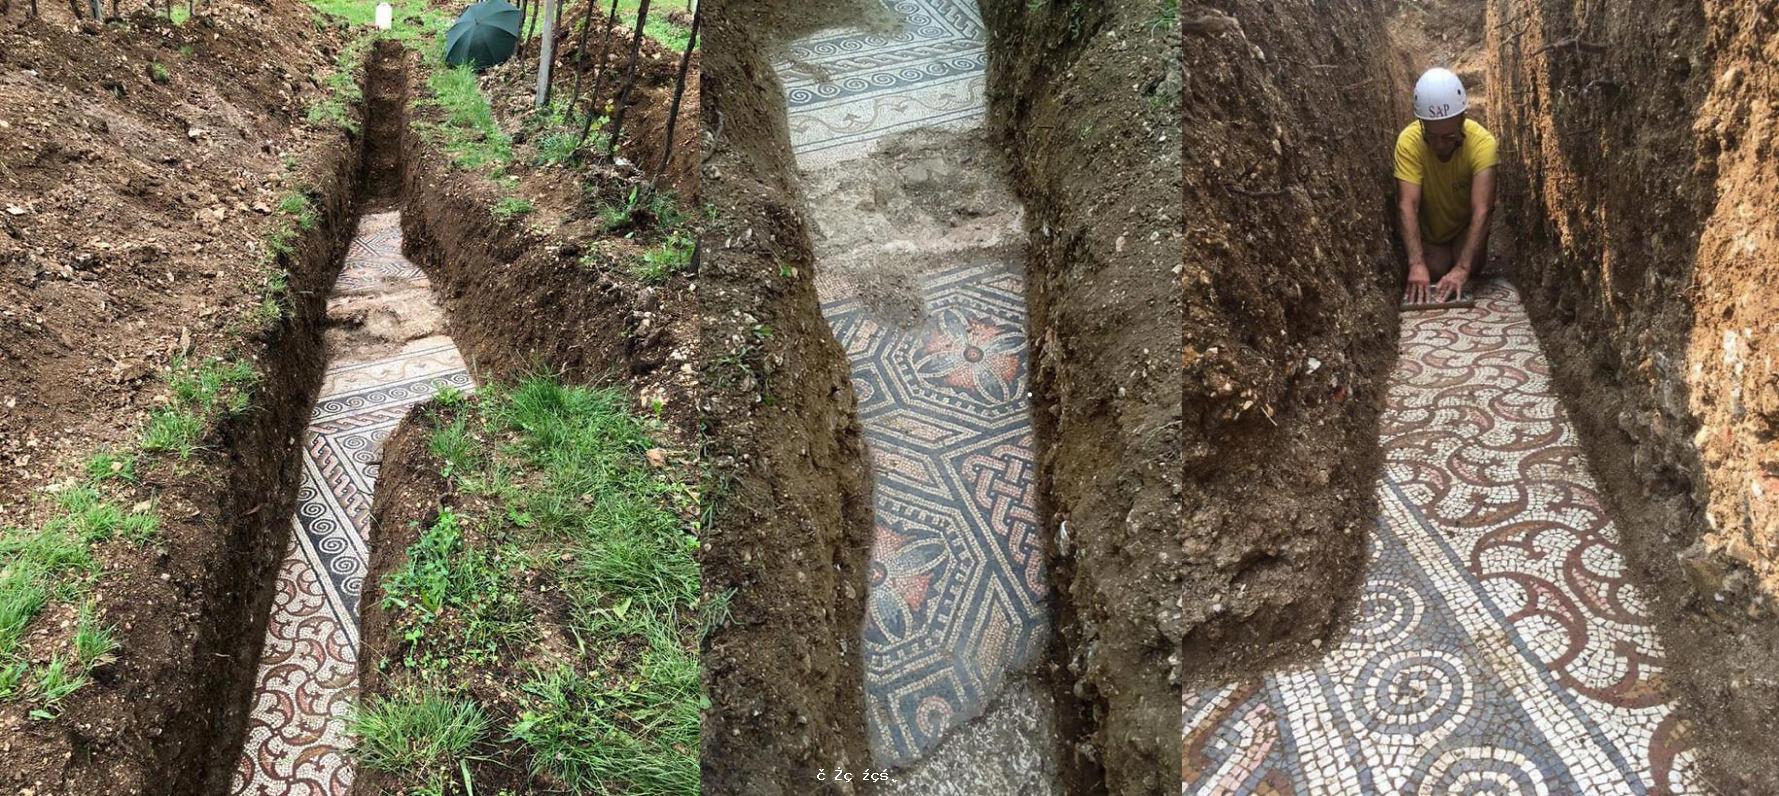 意大利考古學家發現保存完好的古羅馬馬賽克地板 